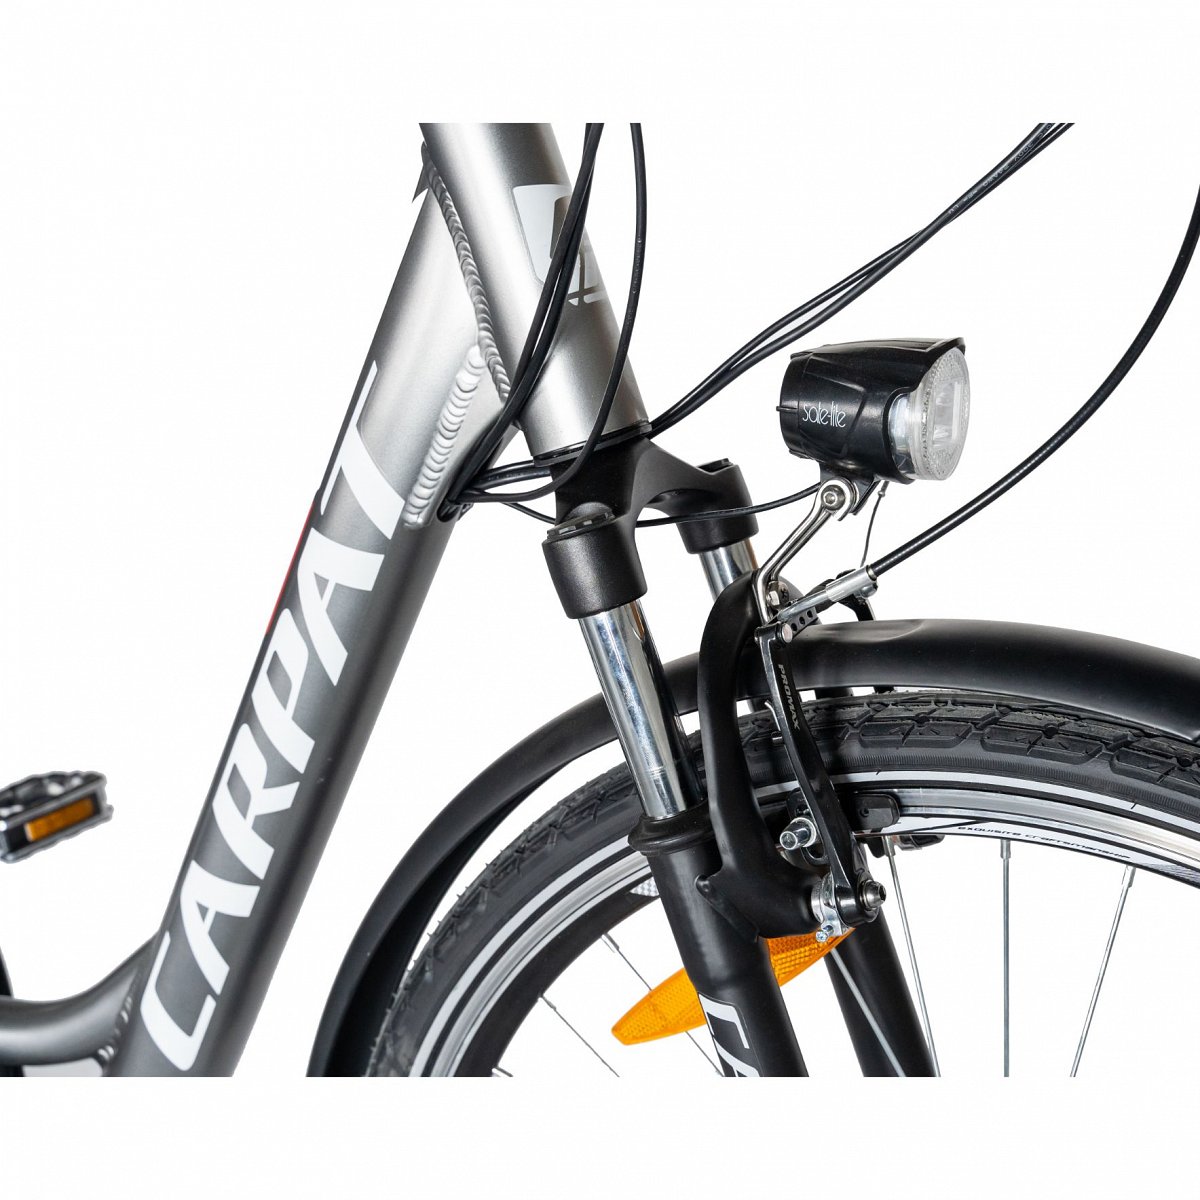 Oh revelation vitamin Bicicleta Electrica de Oras cu Roti de 28", echipare Shimano, Frane  V-Brake, Suspensie fata, 7 Viteze, gri/alb, City Bike Carpat Genius E-Bike  cu Cadru din Aluminiu - eMAG.ro